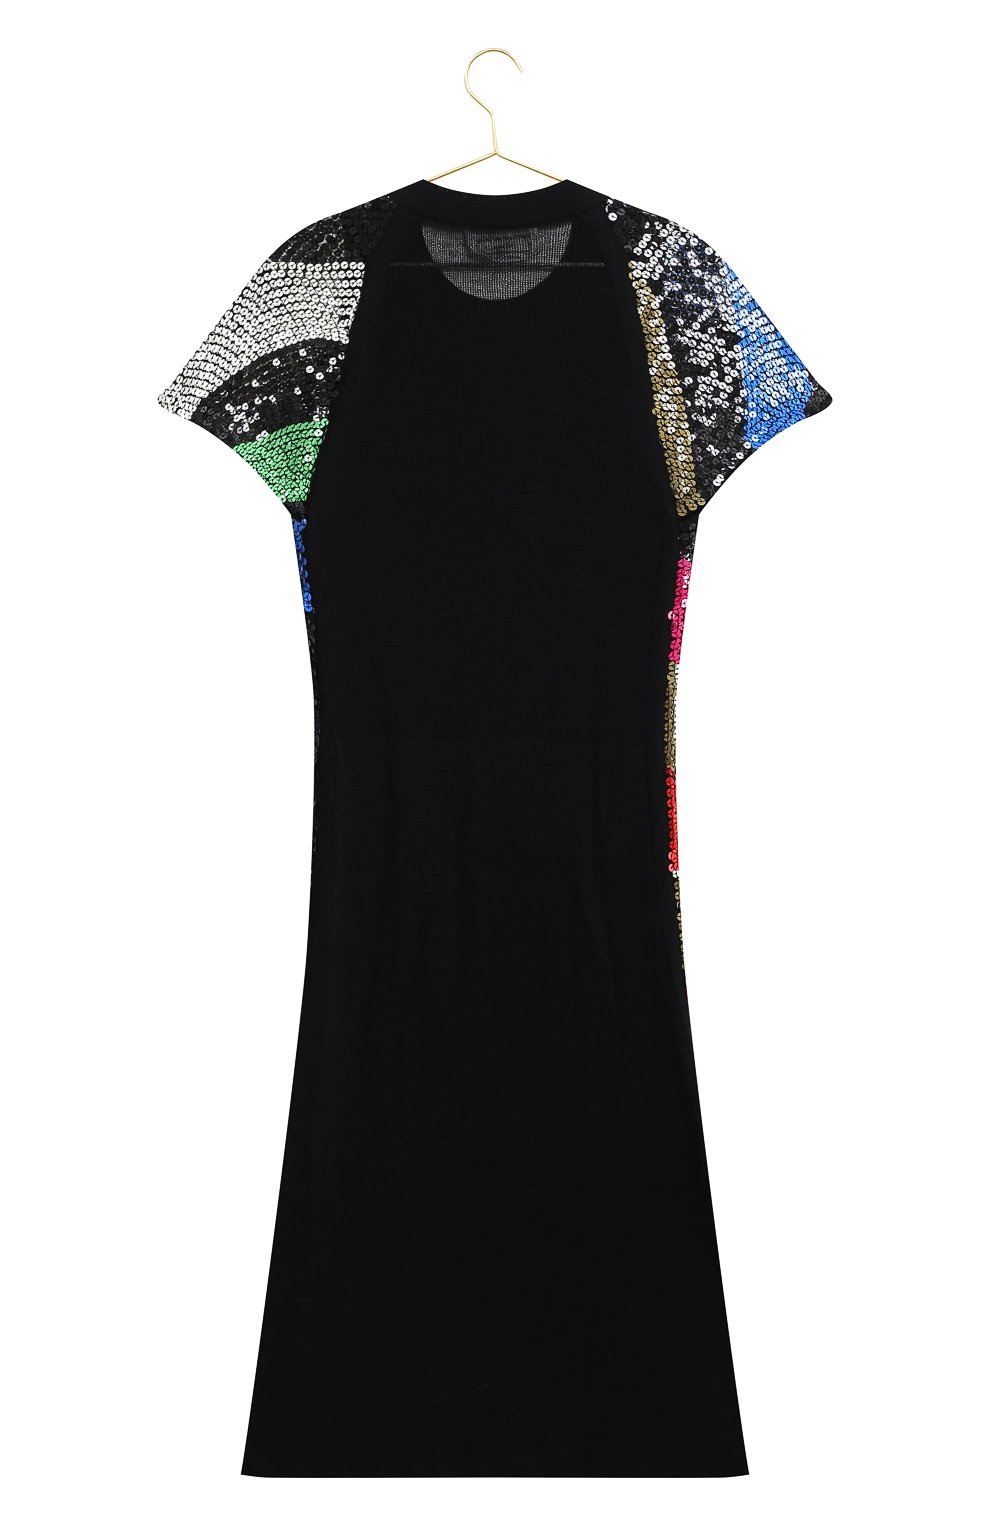 Платье из шерсти и вискозы | Sonia Rykiel | Чёрный - 2